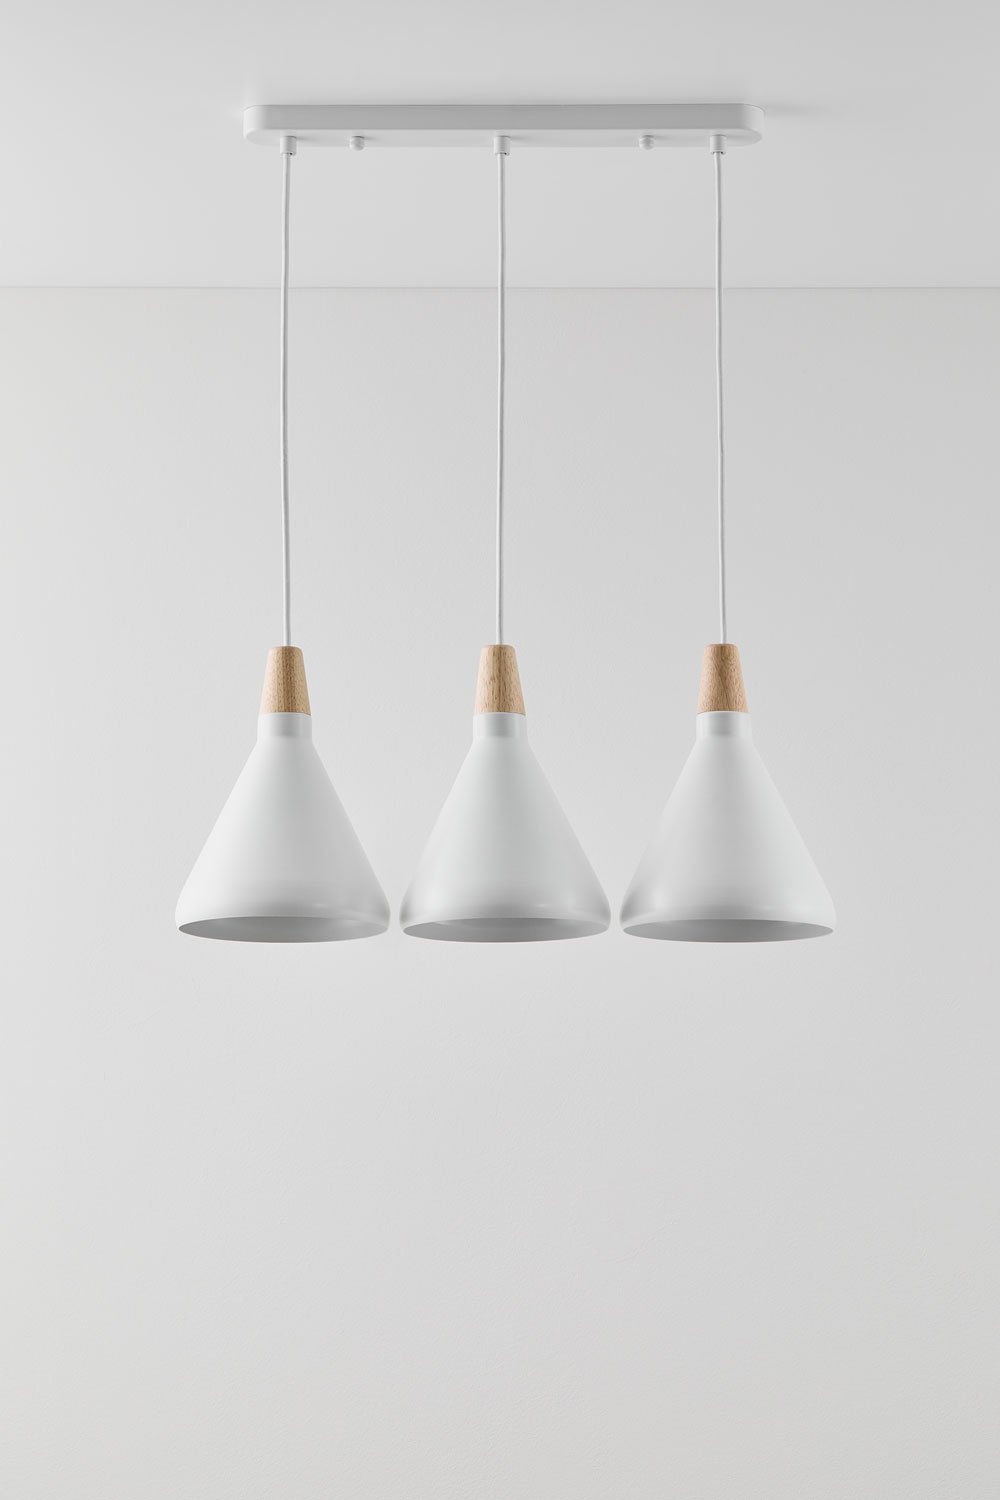 Metalen Plafondlamp met 3 Lichtpunten Ebrien, galerij beeld 1